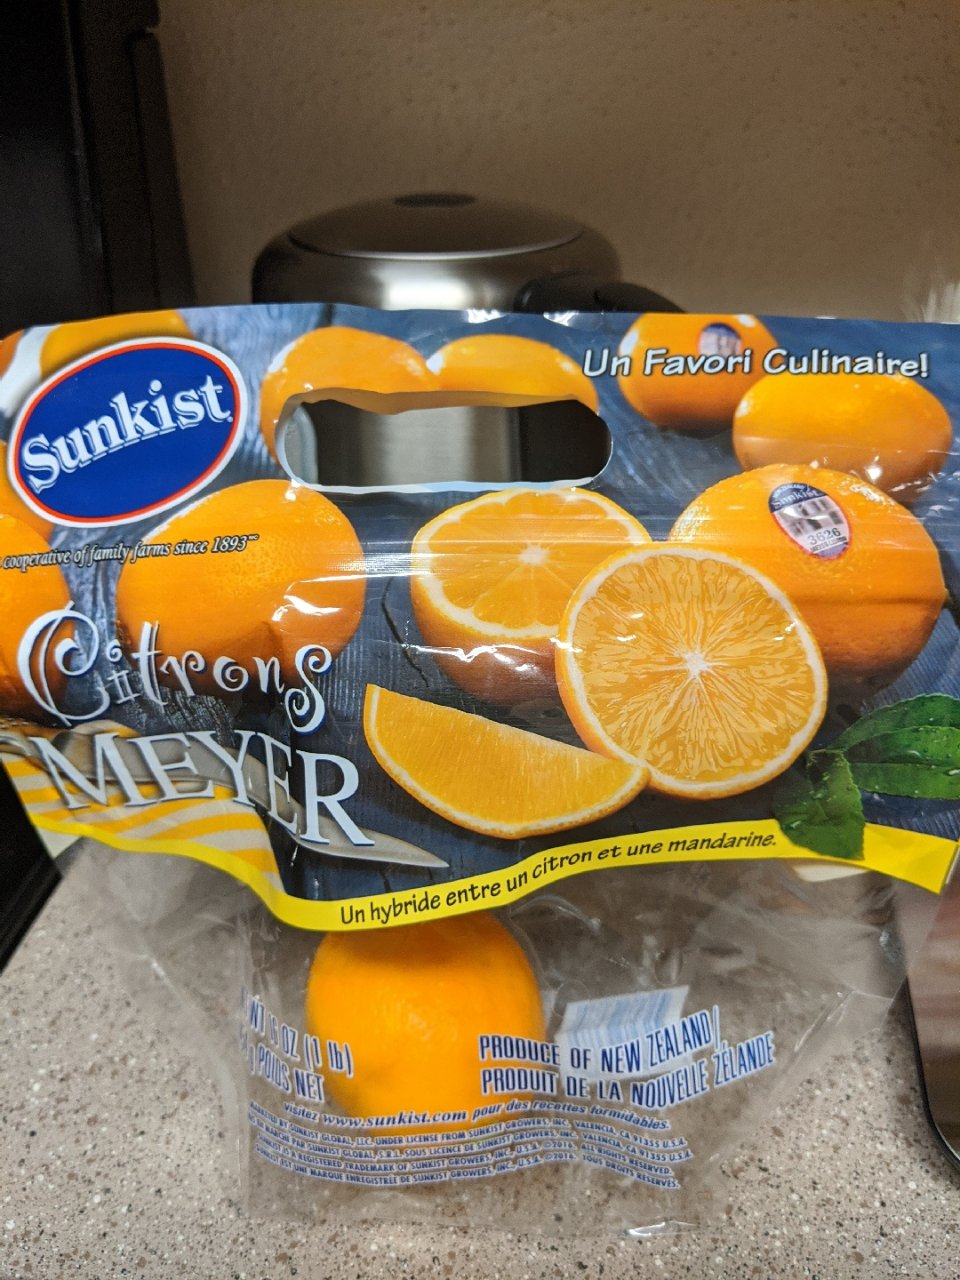 橙子柠檬杂交